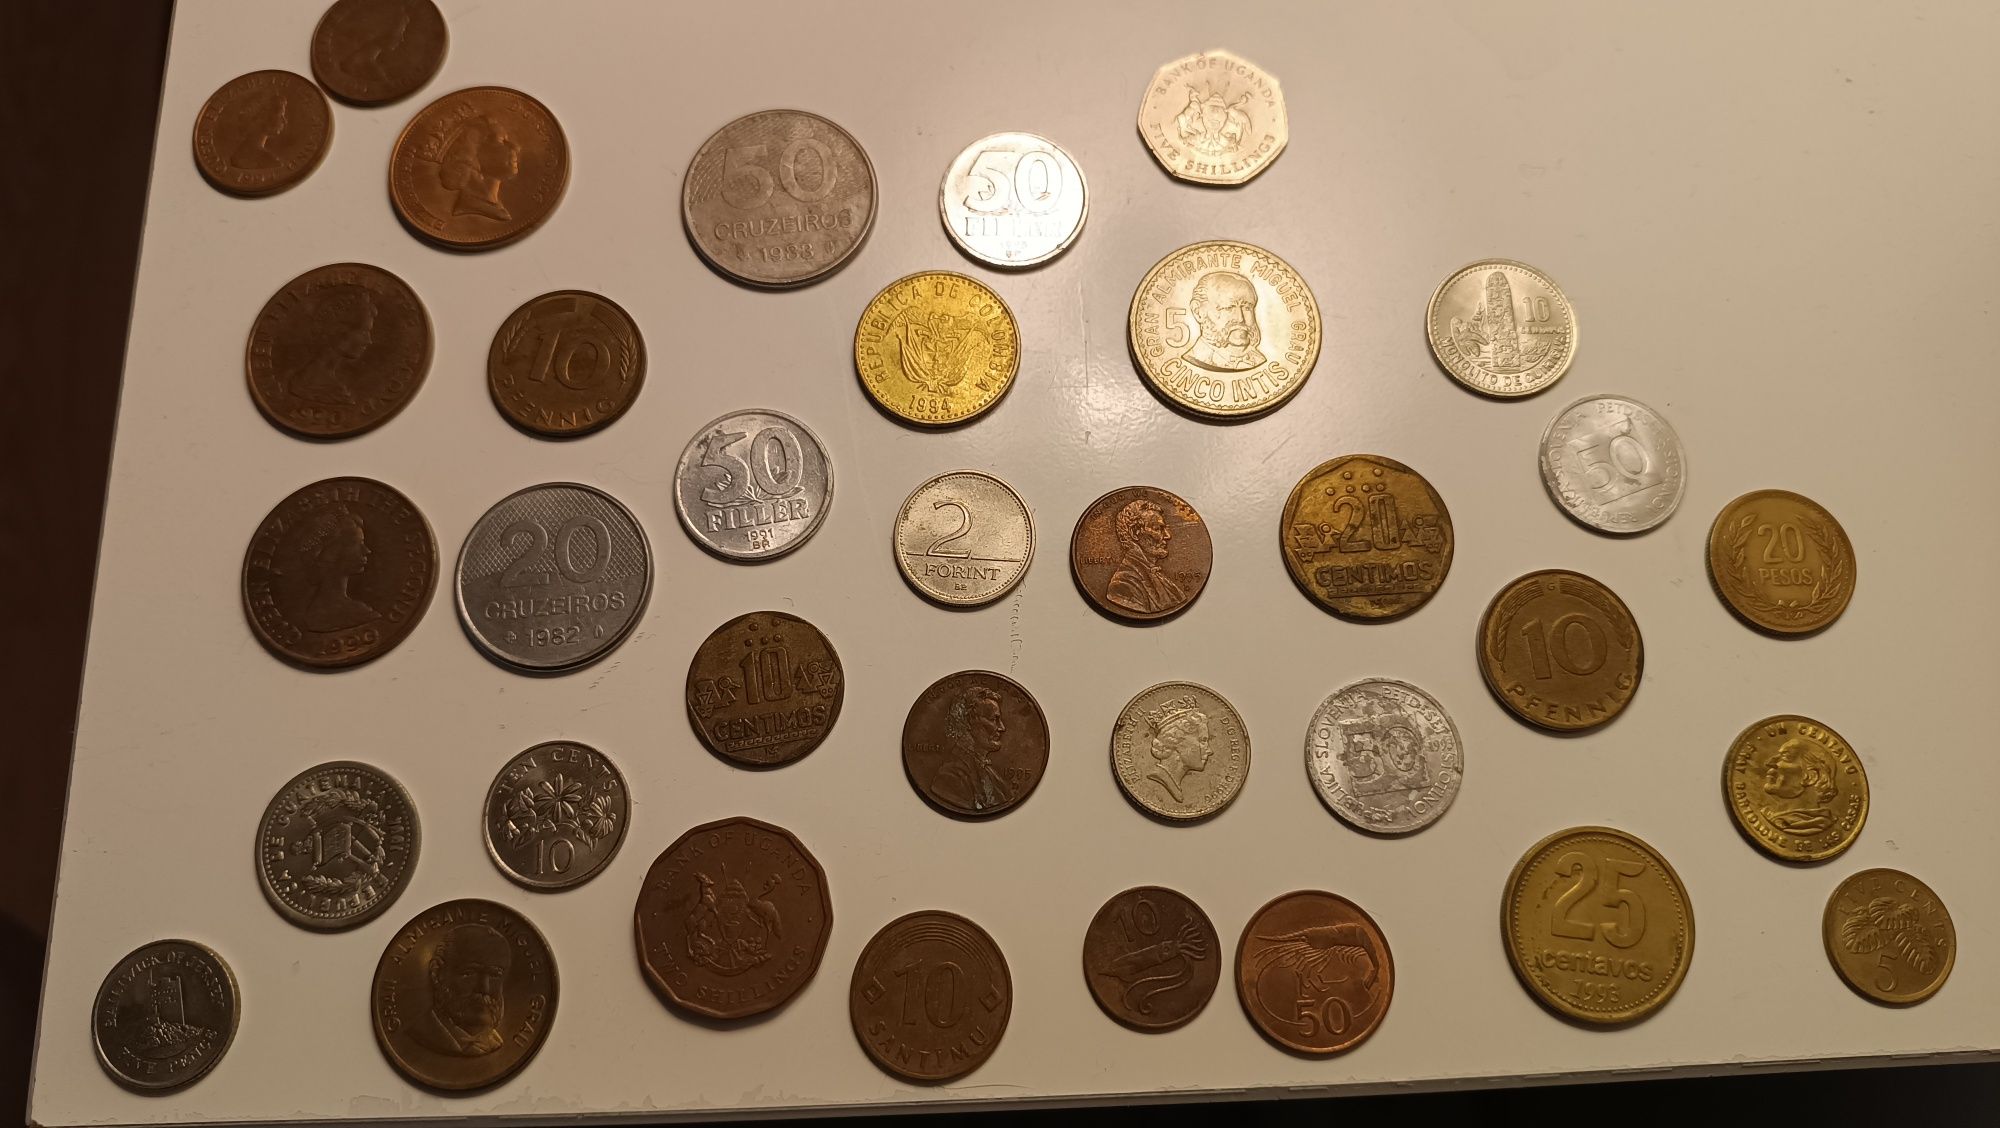 Notas e moedas antigas de vários paises